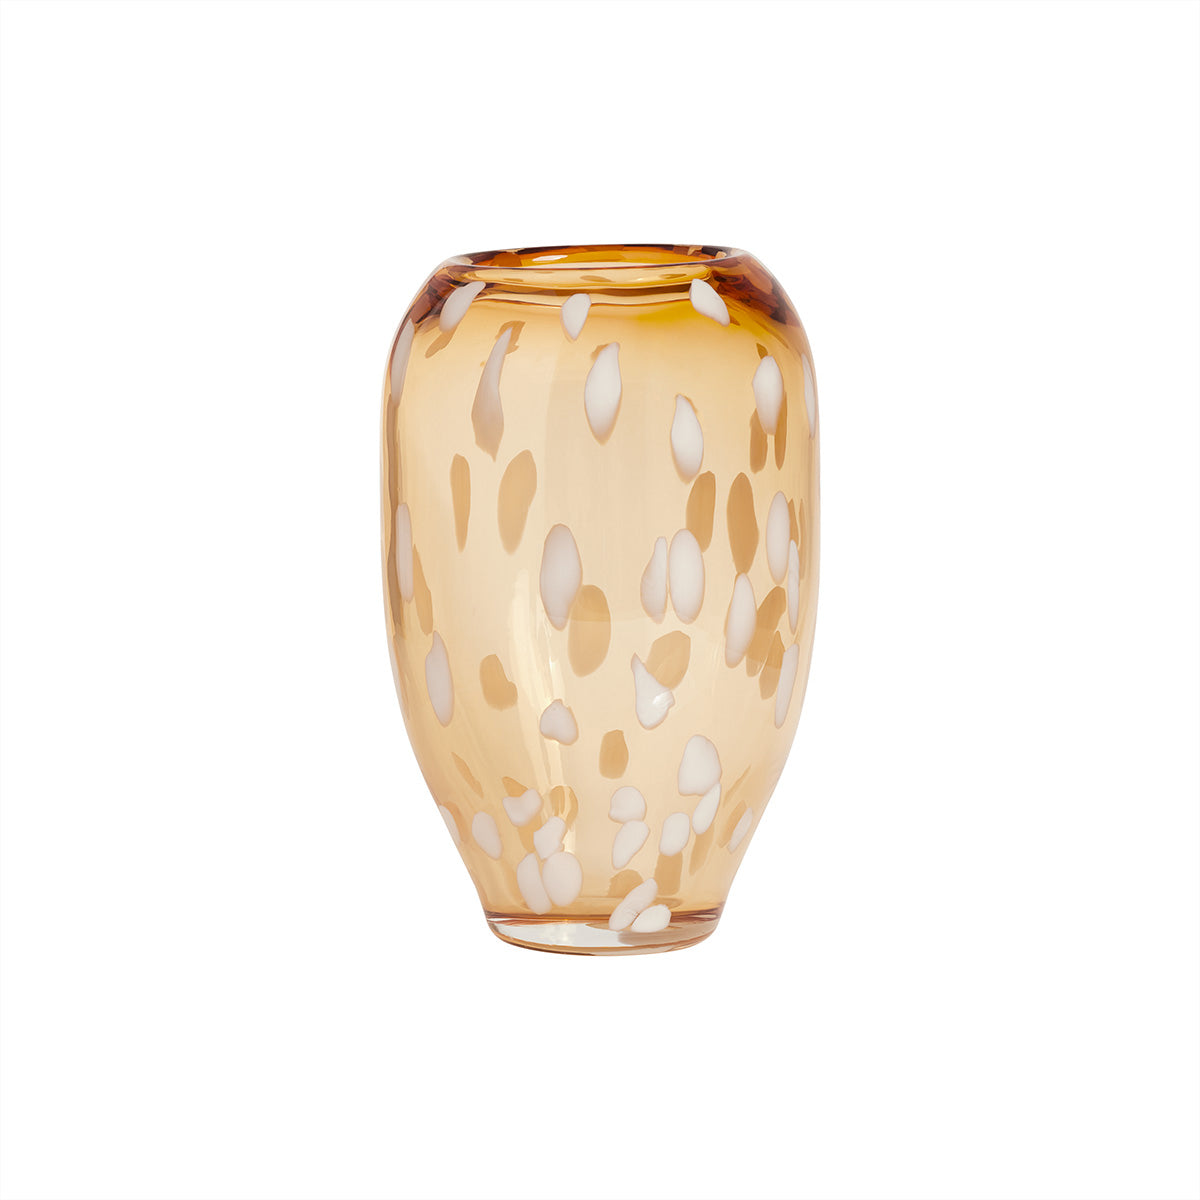 OYOY LIVING Jali Vase - Medium Vase 311 Amber